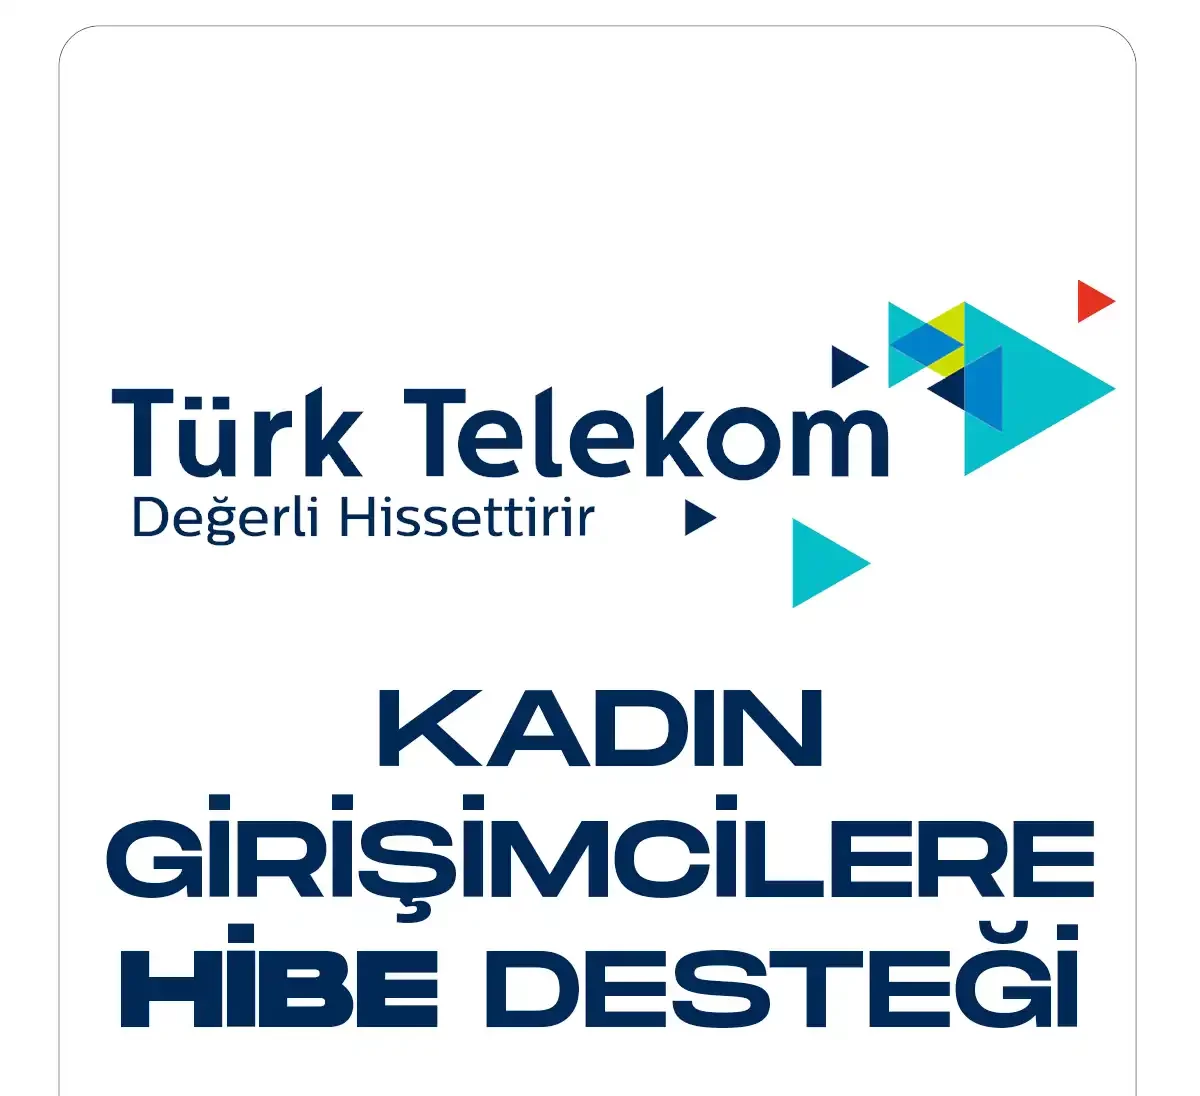 Türk Telekom'dan kadın girişimcilere hibe desteği verilecek.